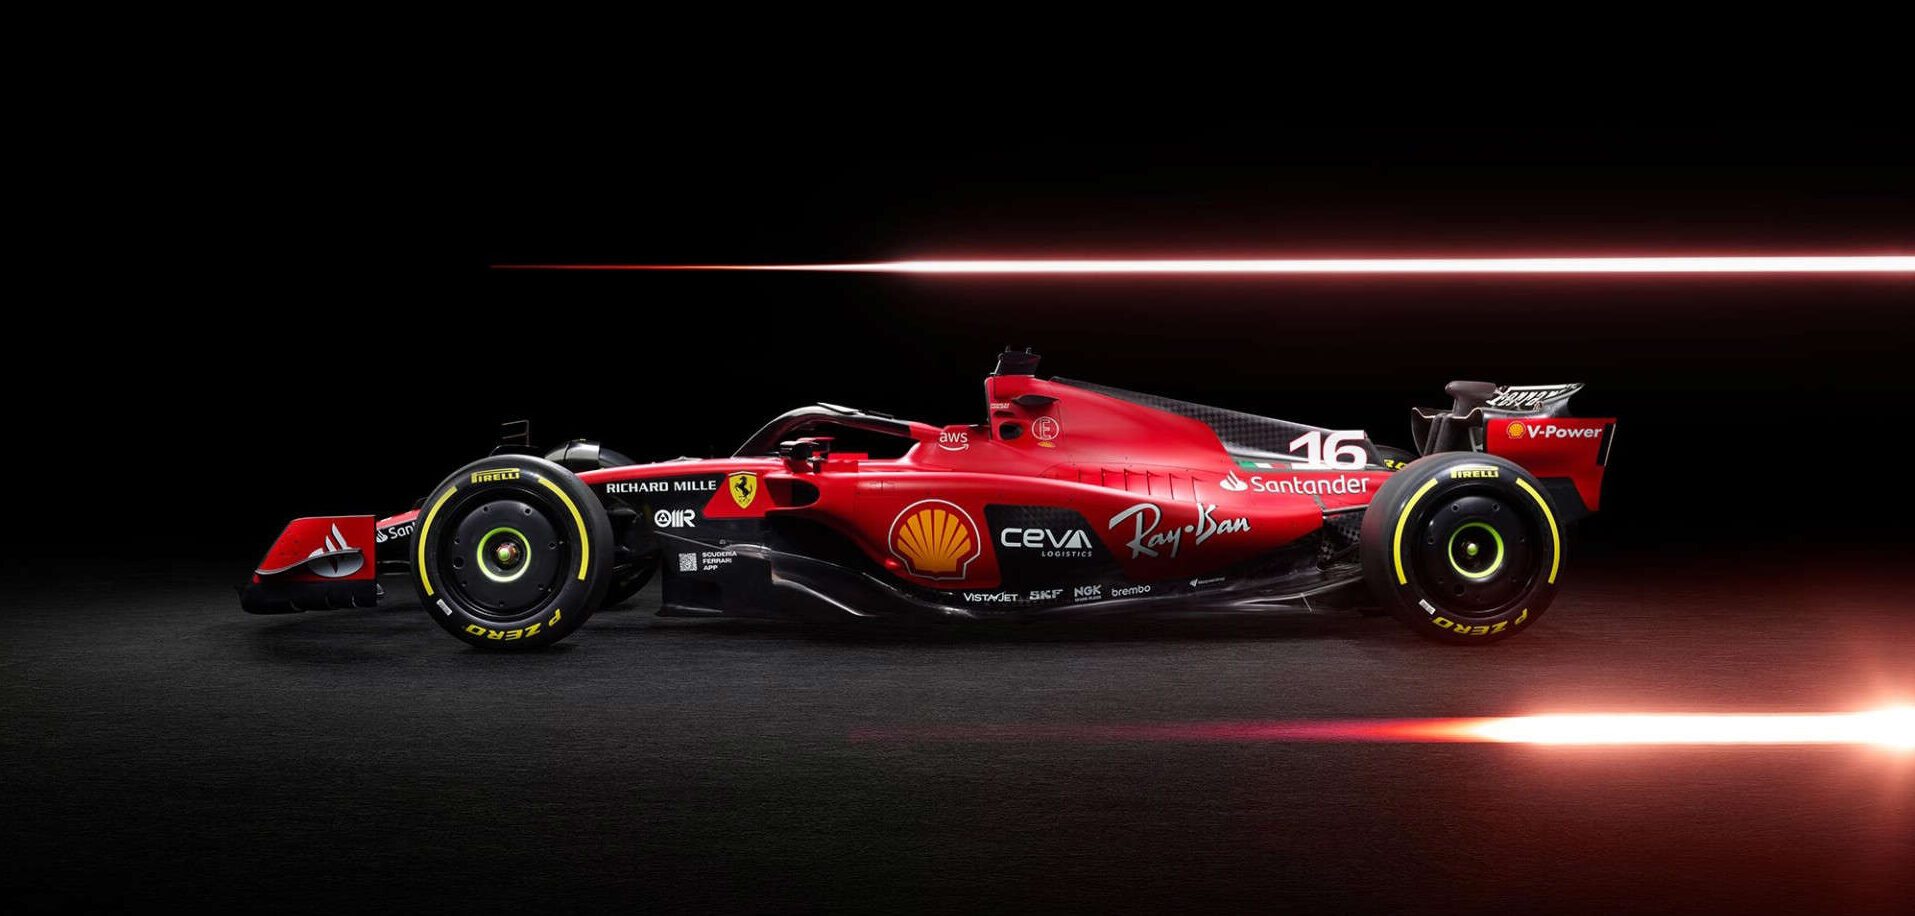 Ferrari launches its 2019 Formula 1 car